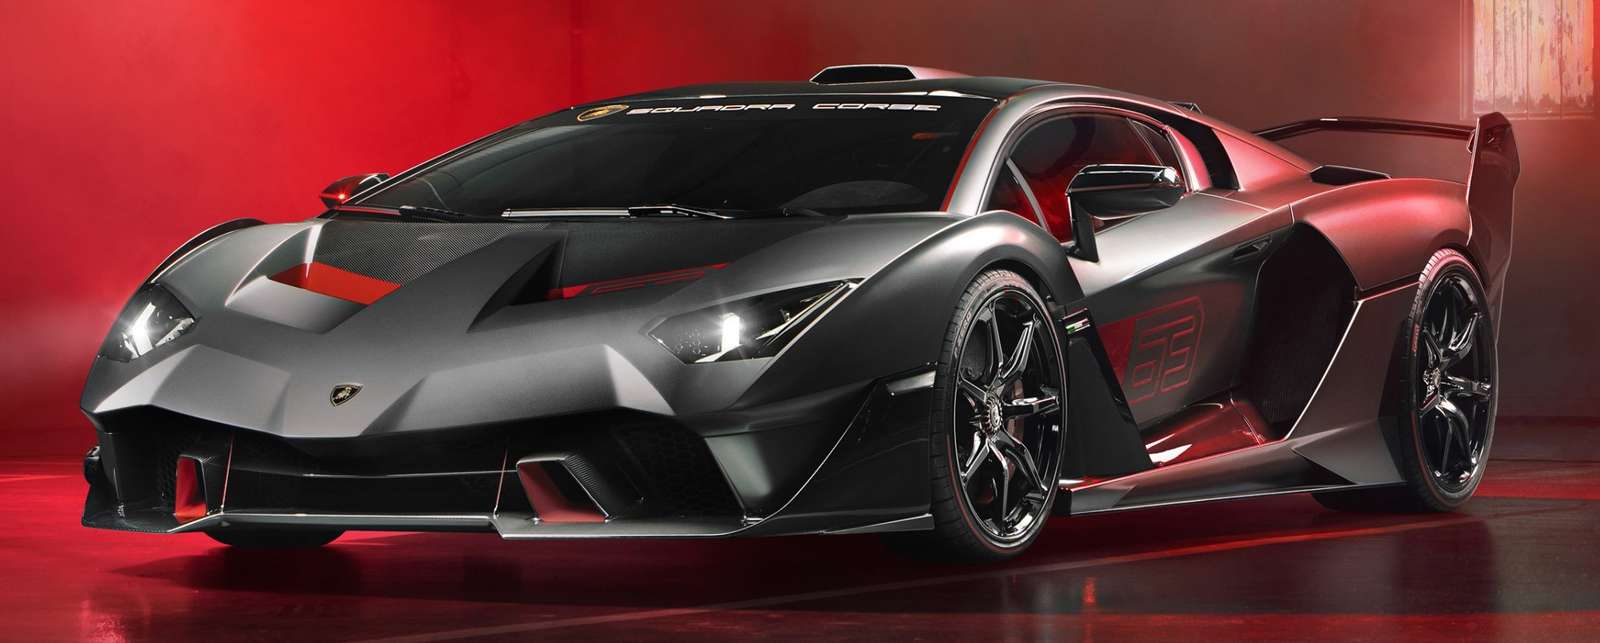 Lamborghini SC18 Алстон пазл онлайн